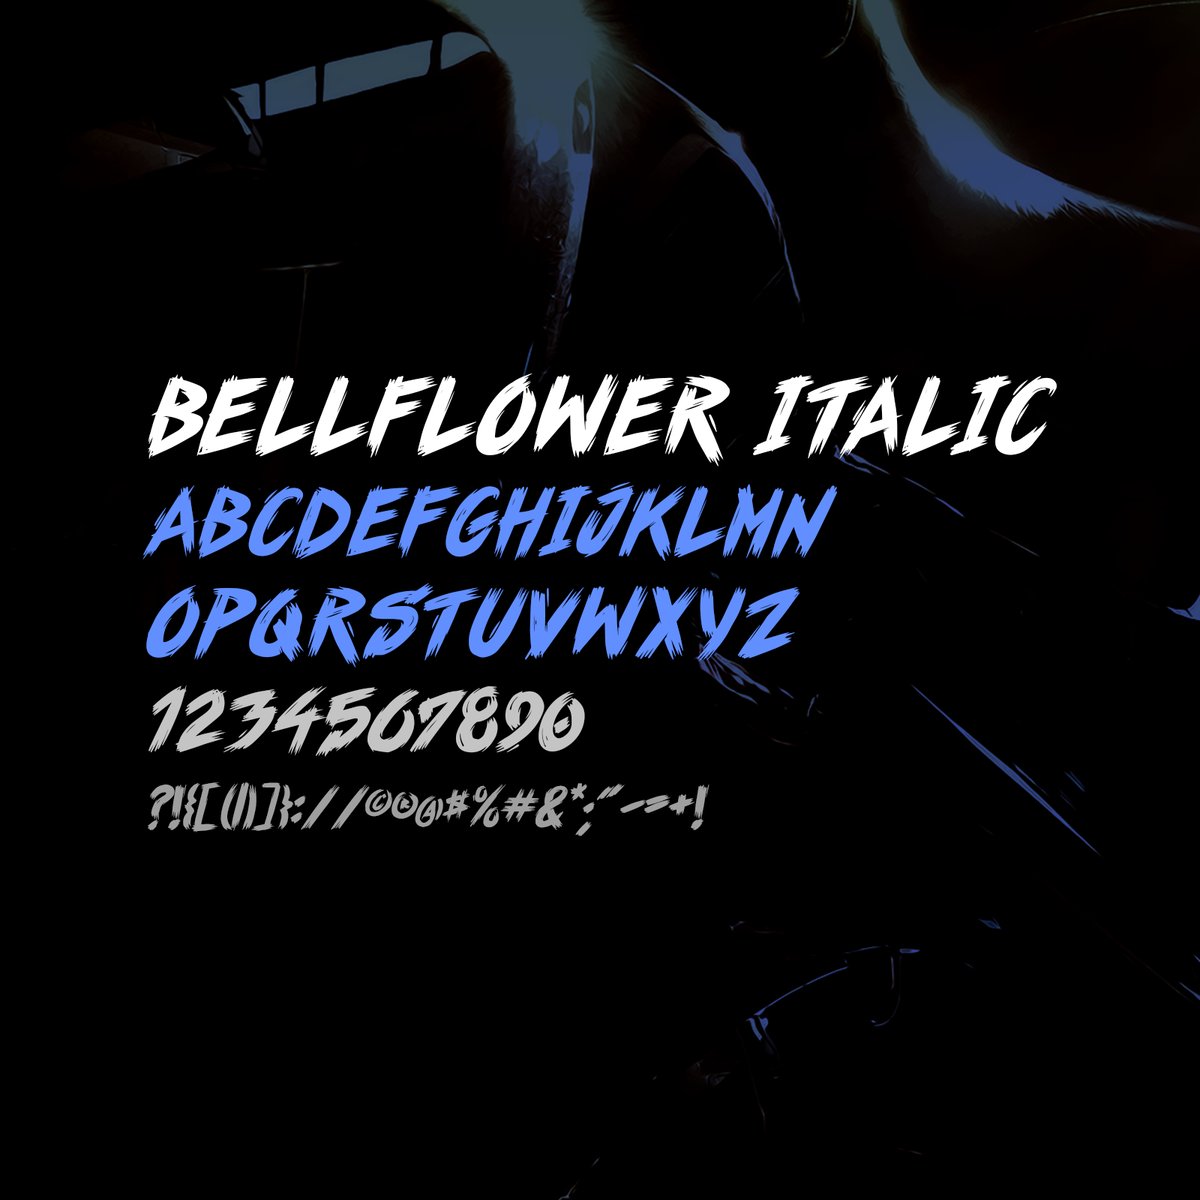 Image of "Bellflower" Font